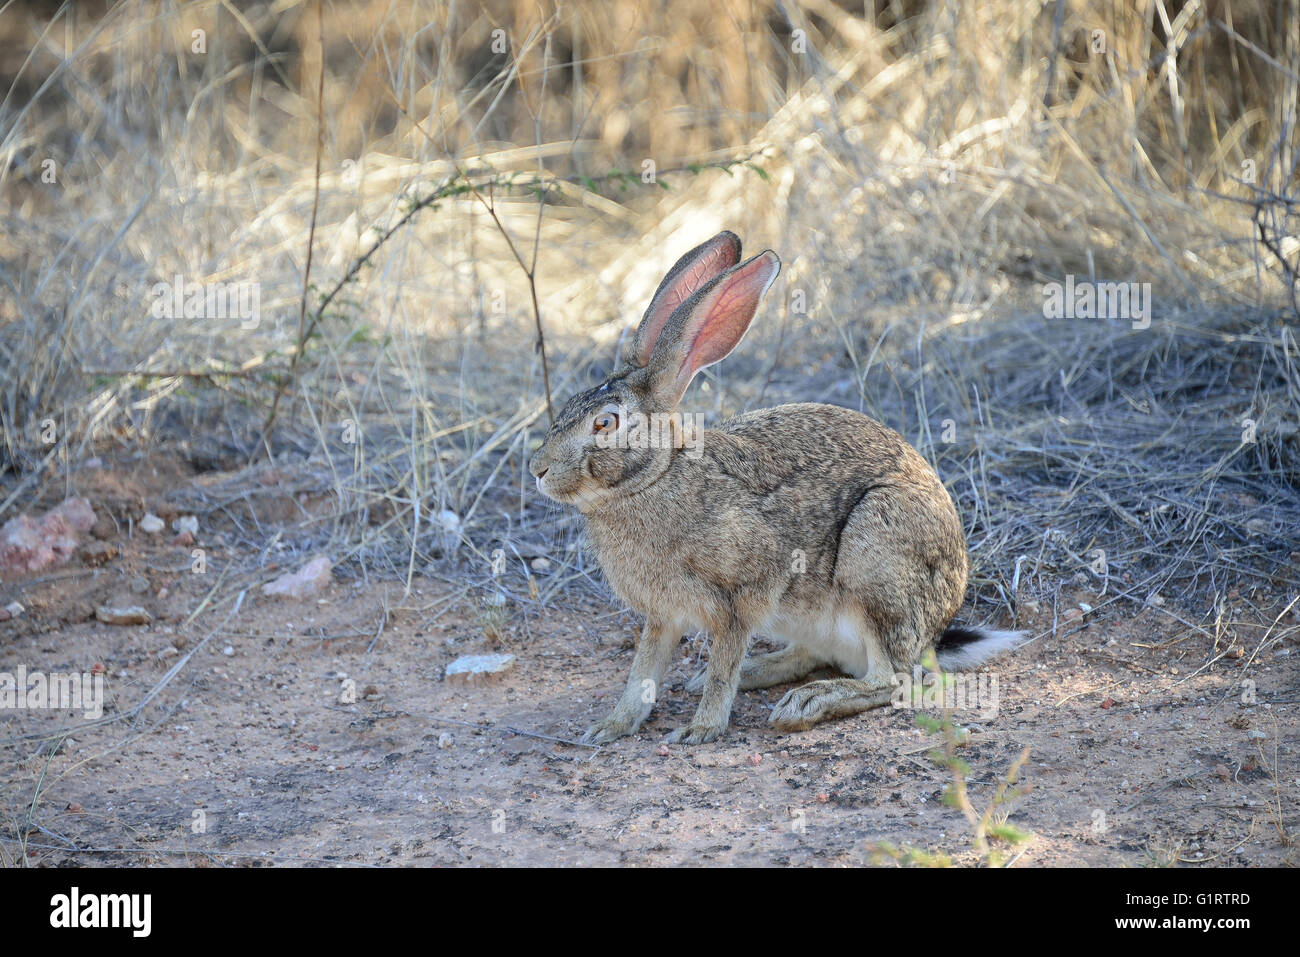 Cape hare (Lepus capensis), Etosha National Park, Namibia Stock Photo